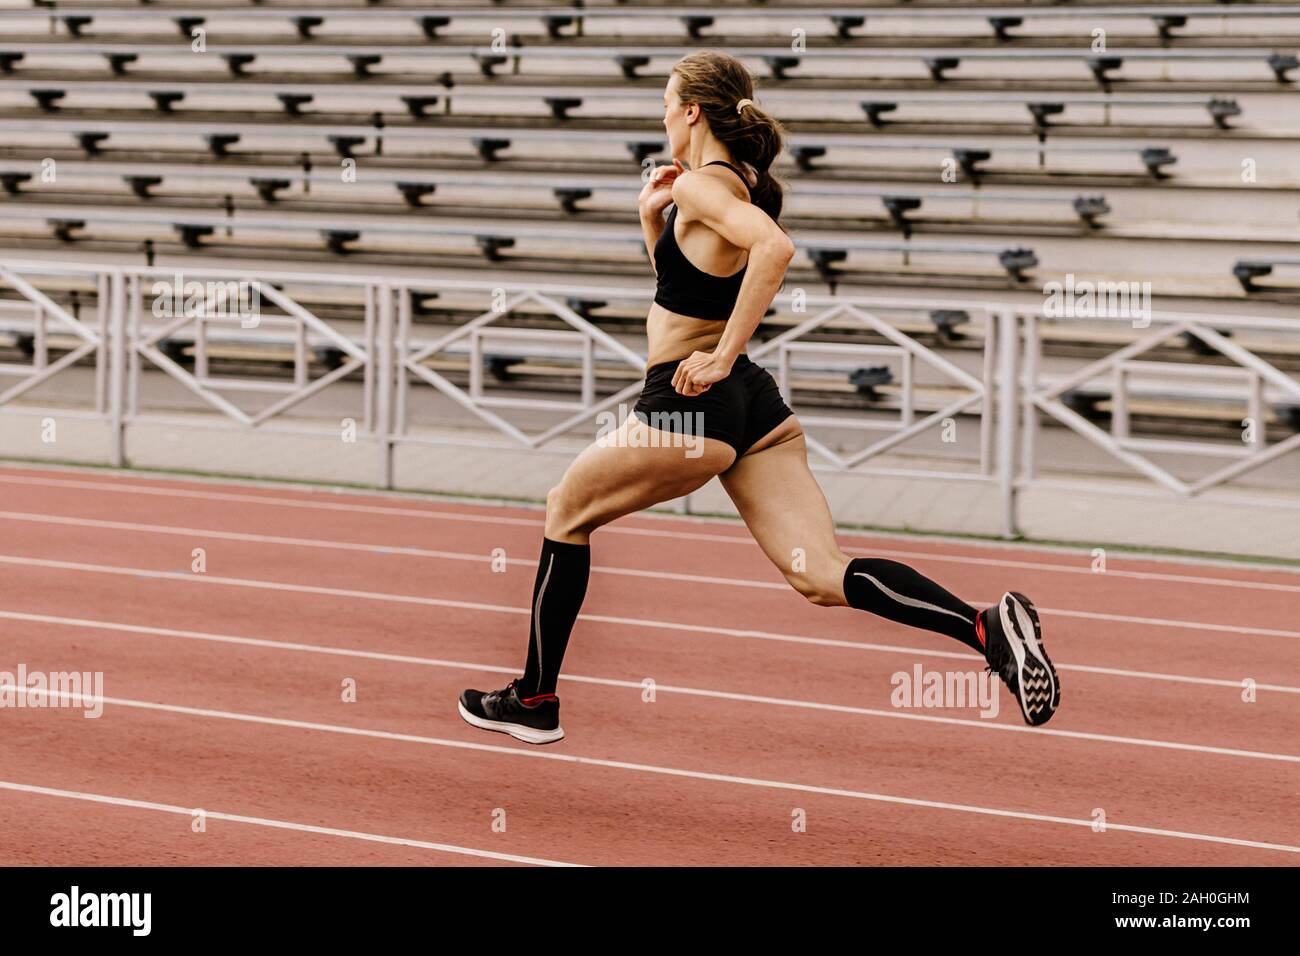 Atleta Femenina runner ejecute el estadio de asientos tipo estadio de fondo Foto de stock